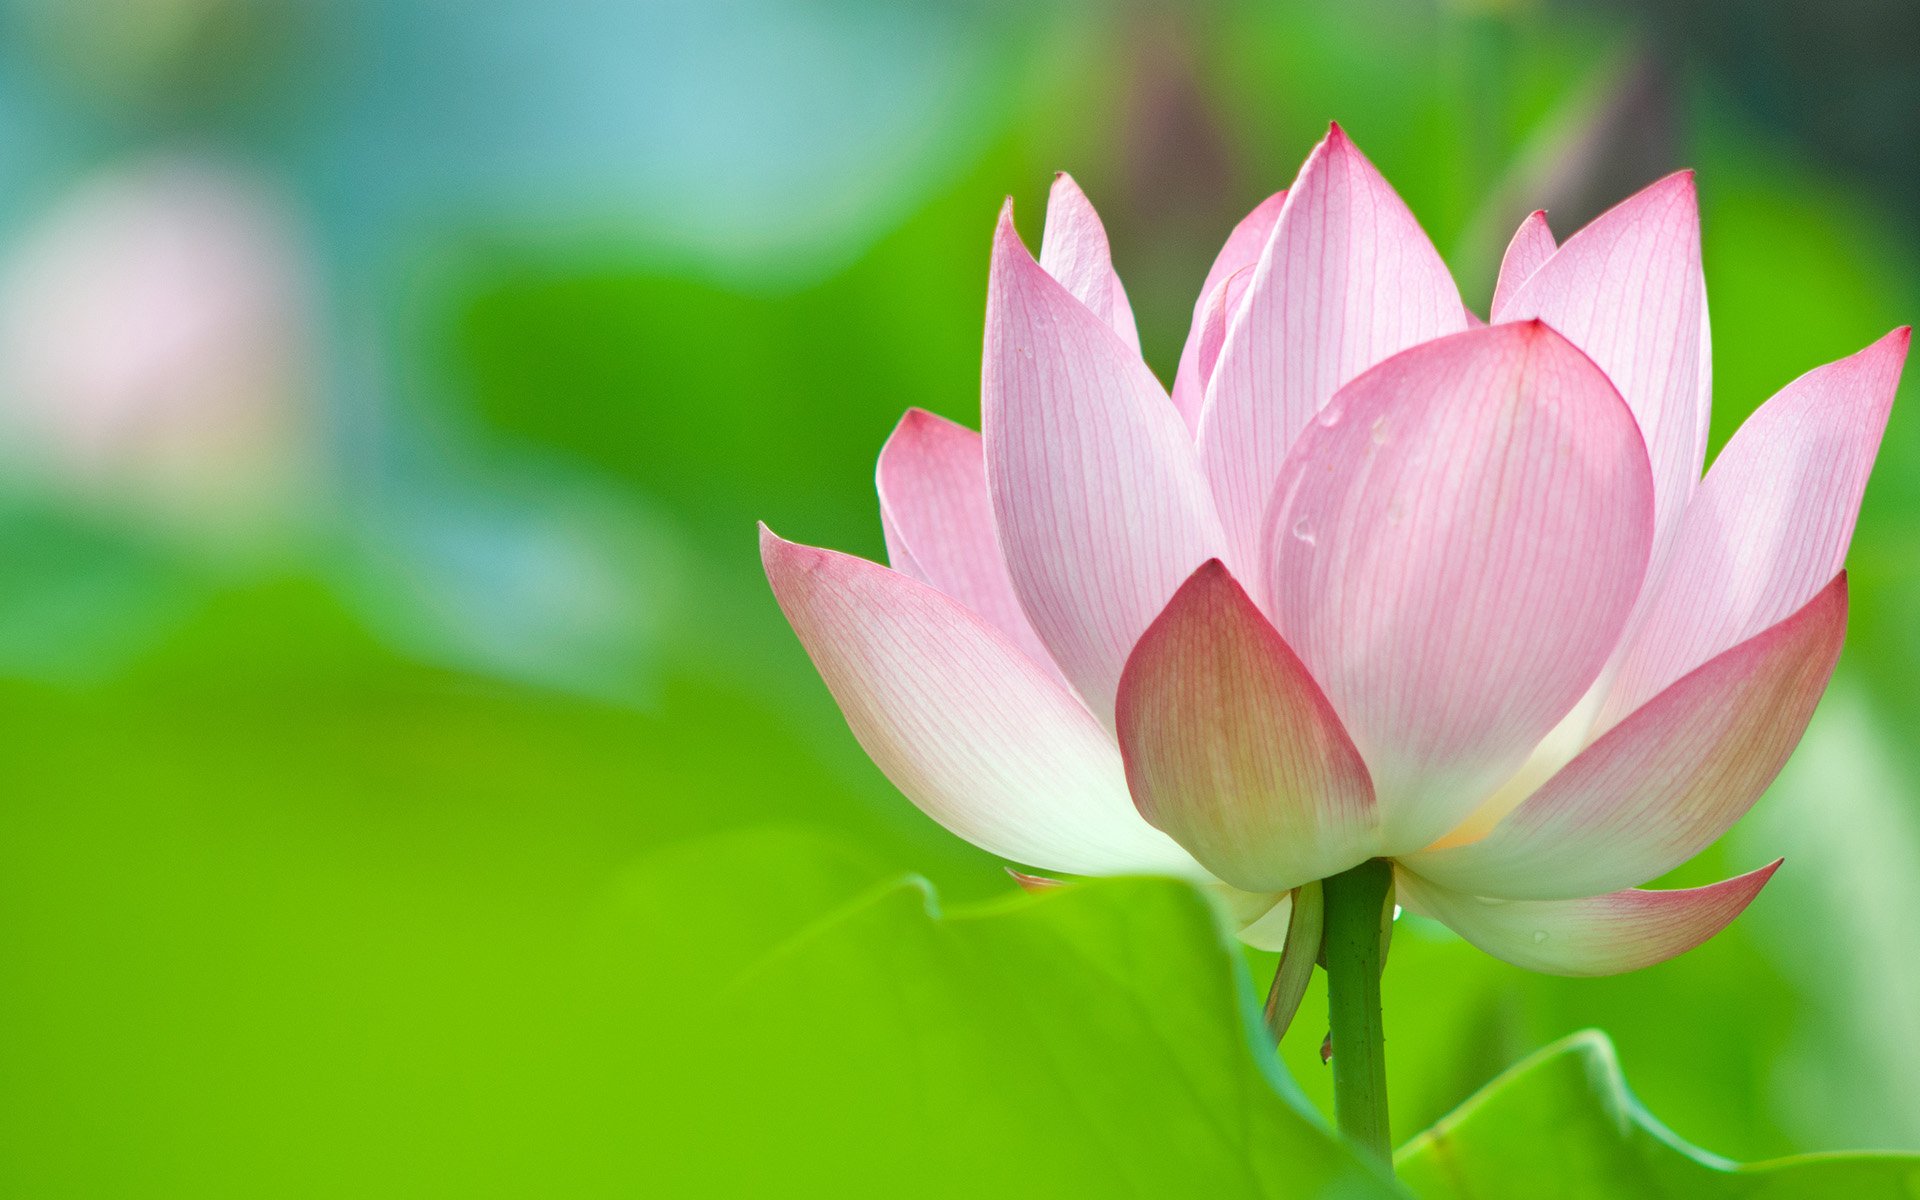 Hoa sen: Hoa sen được xem là biểu tượng của sự thanh cao và tinh tế trong văn hóa Việt Nam. Hãy cùng chiêm ngưỡng vẻ đẹp tuyệt vời của hoa sen và tìm hiểu thêm về ý nghĩa đặc biệt mà nó mang lại.